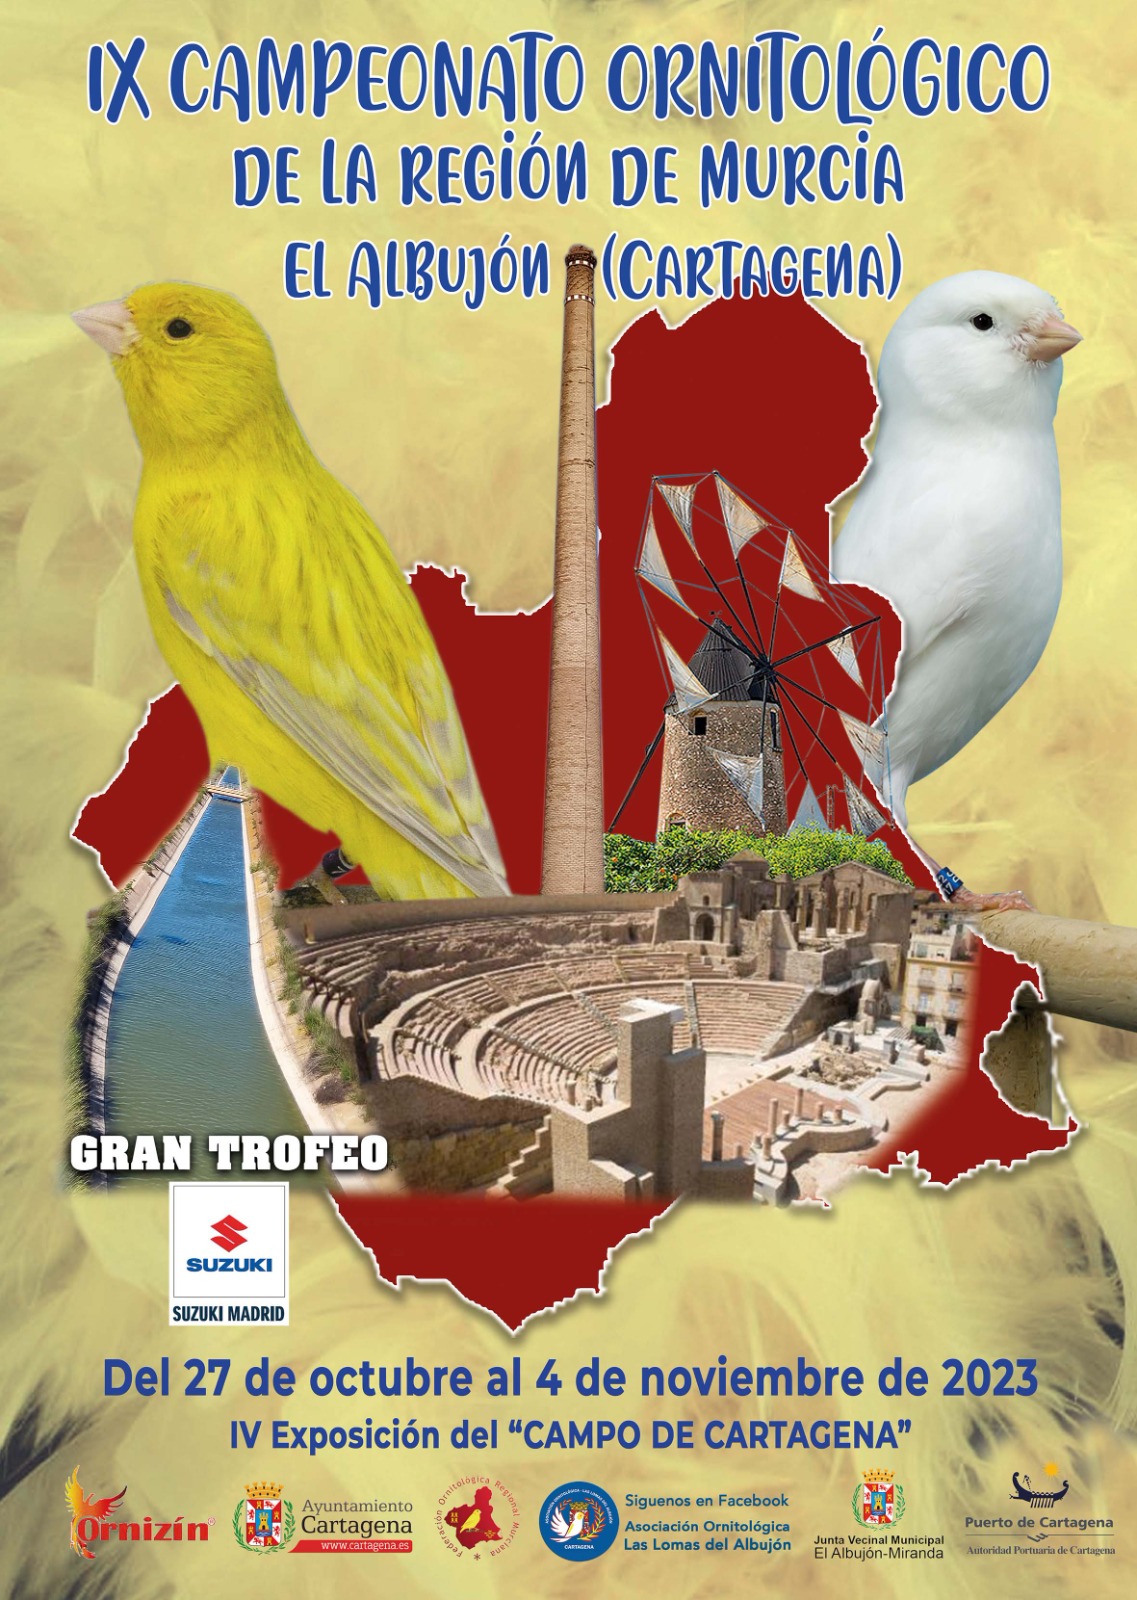 Concurso ornitologico regional región de Murcia 2023